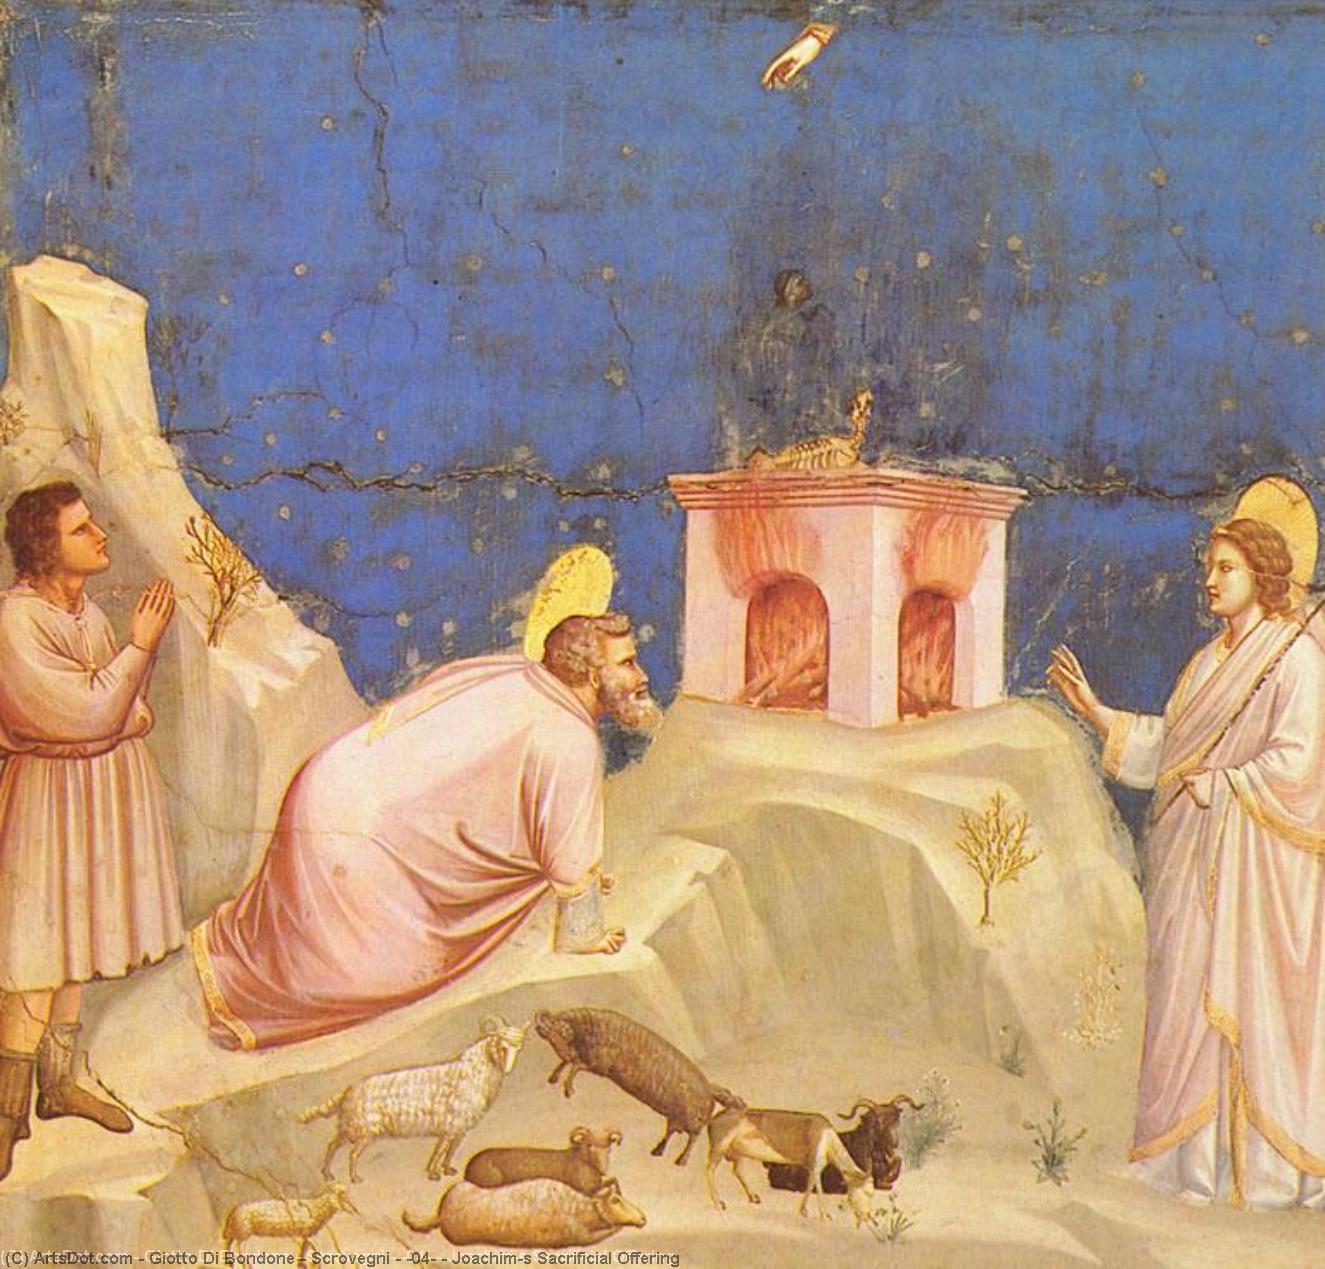 WikiOO.org - Encyclopedia of Fine Arts - Malba, Artwork Giotto Di Bondone - Scrovegni - [04] - Joachim's Sacrificial Offering